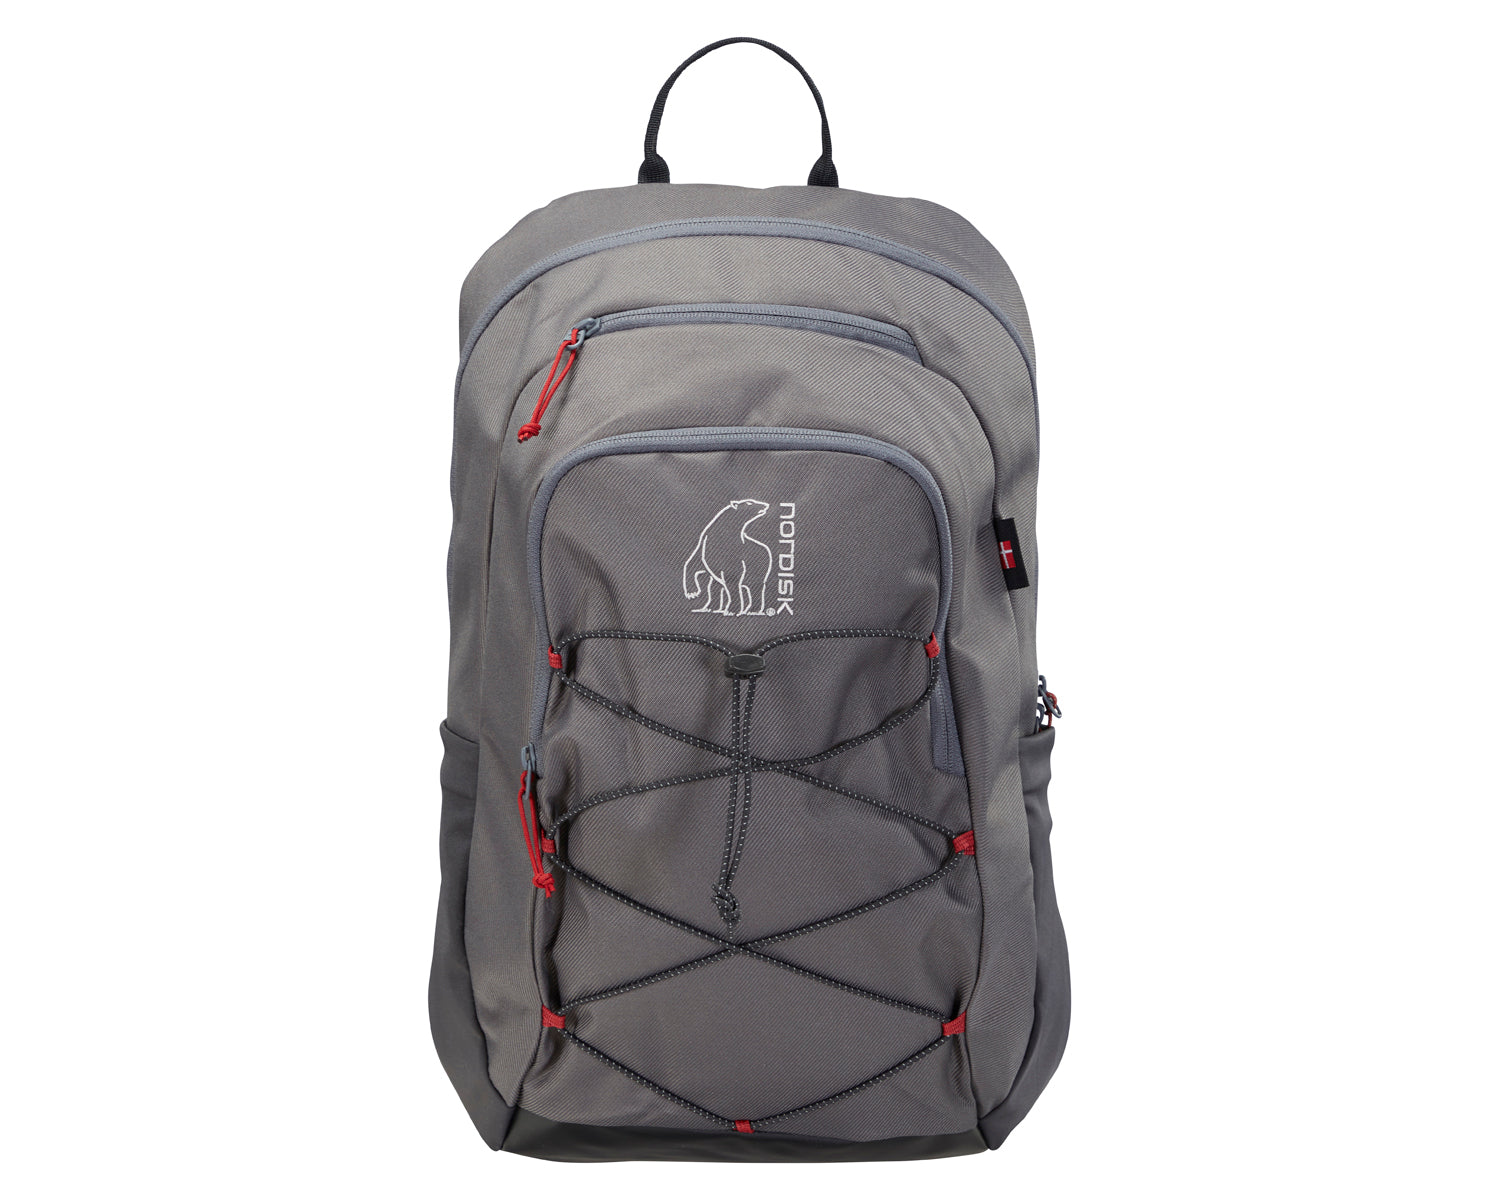 Tinn 24 backpack - 24 L - Magnet